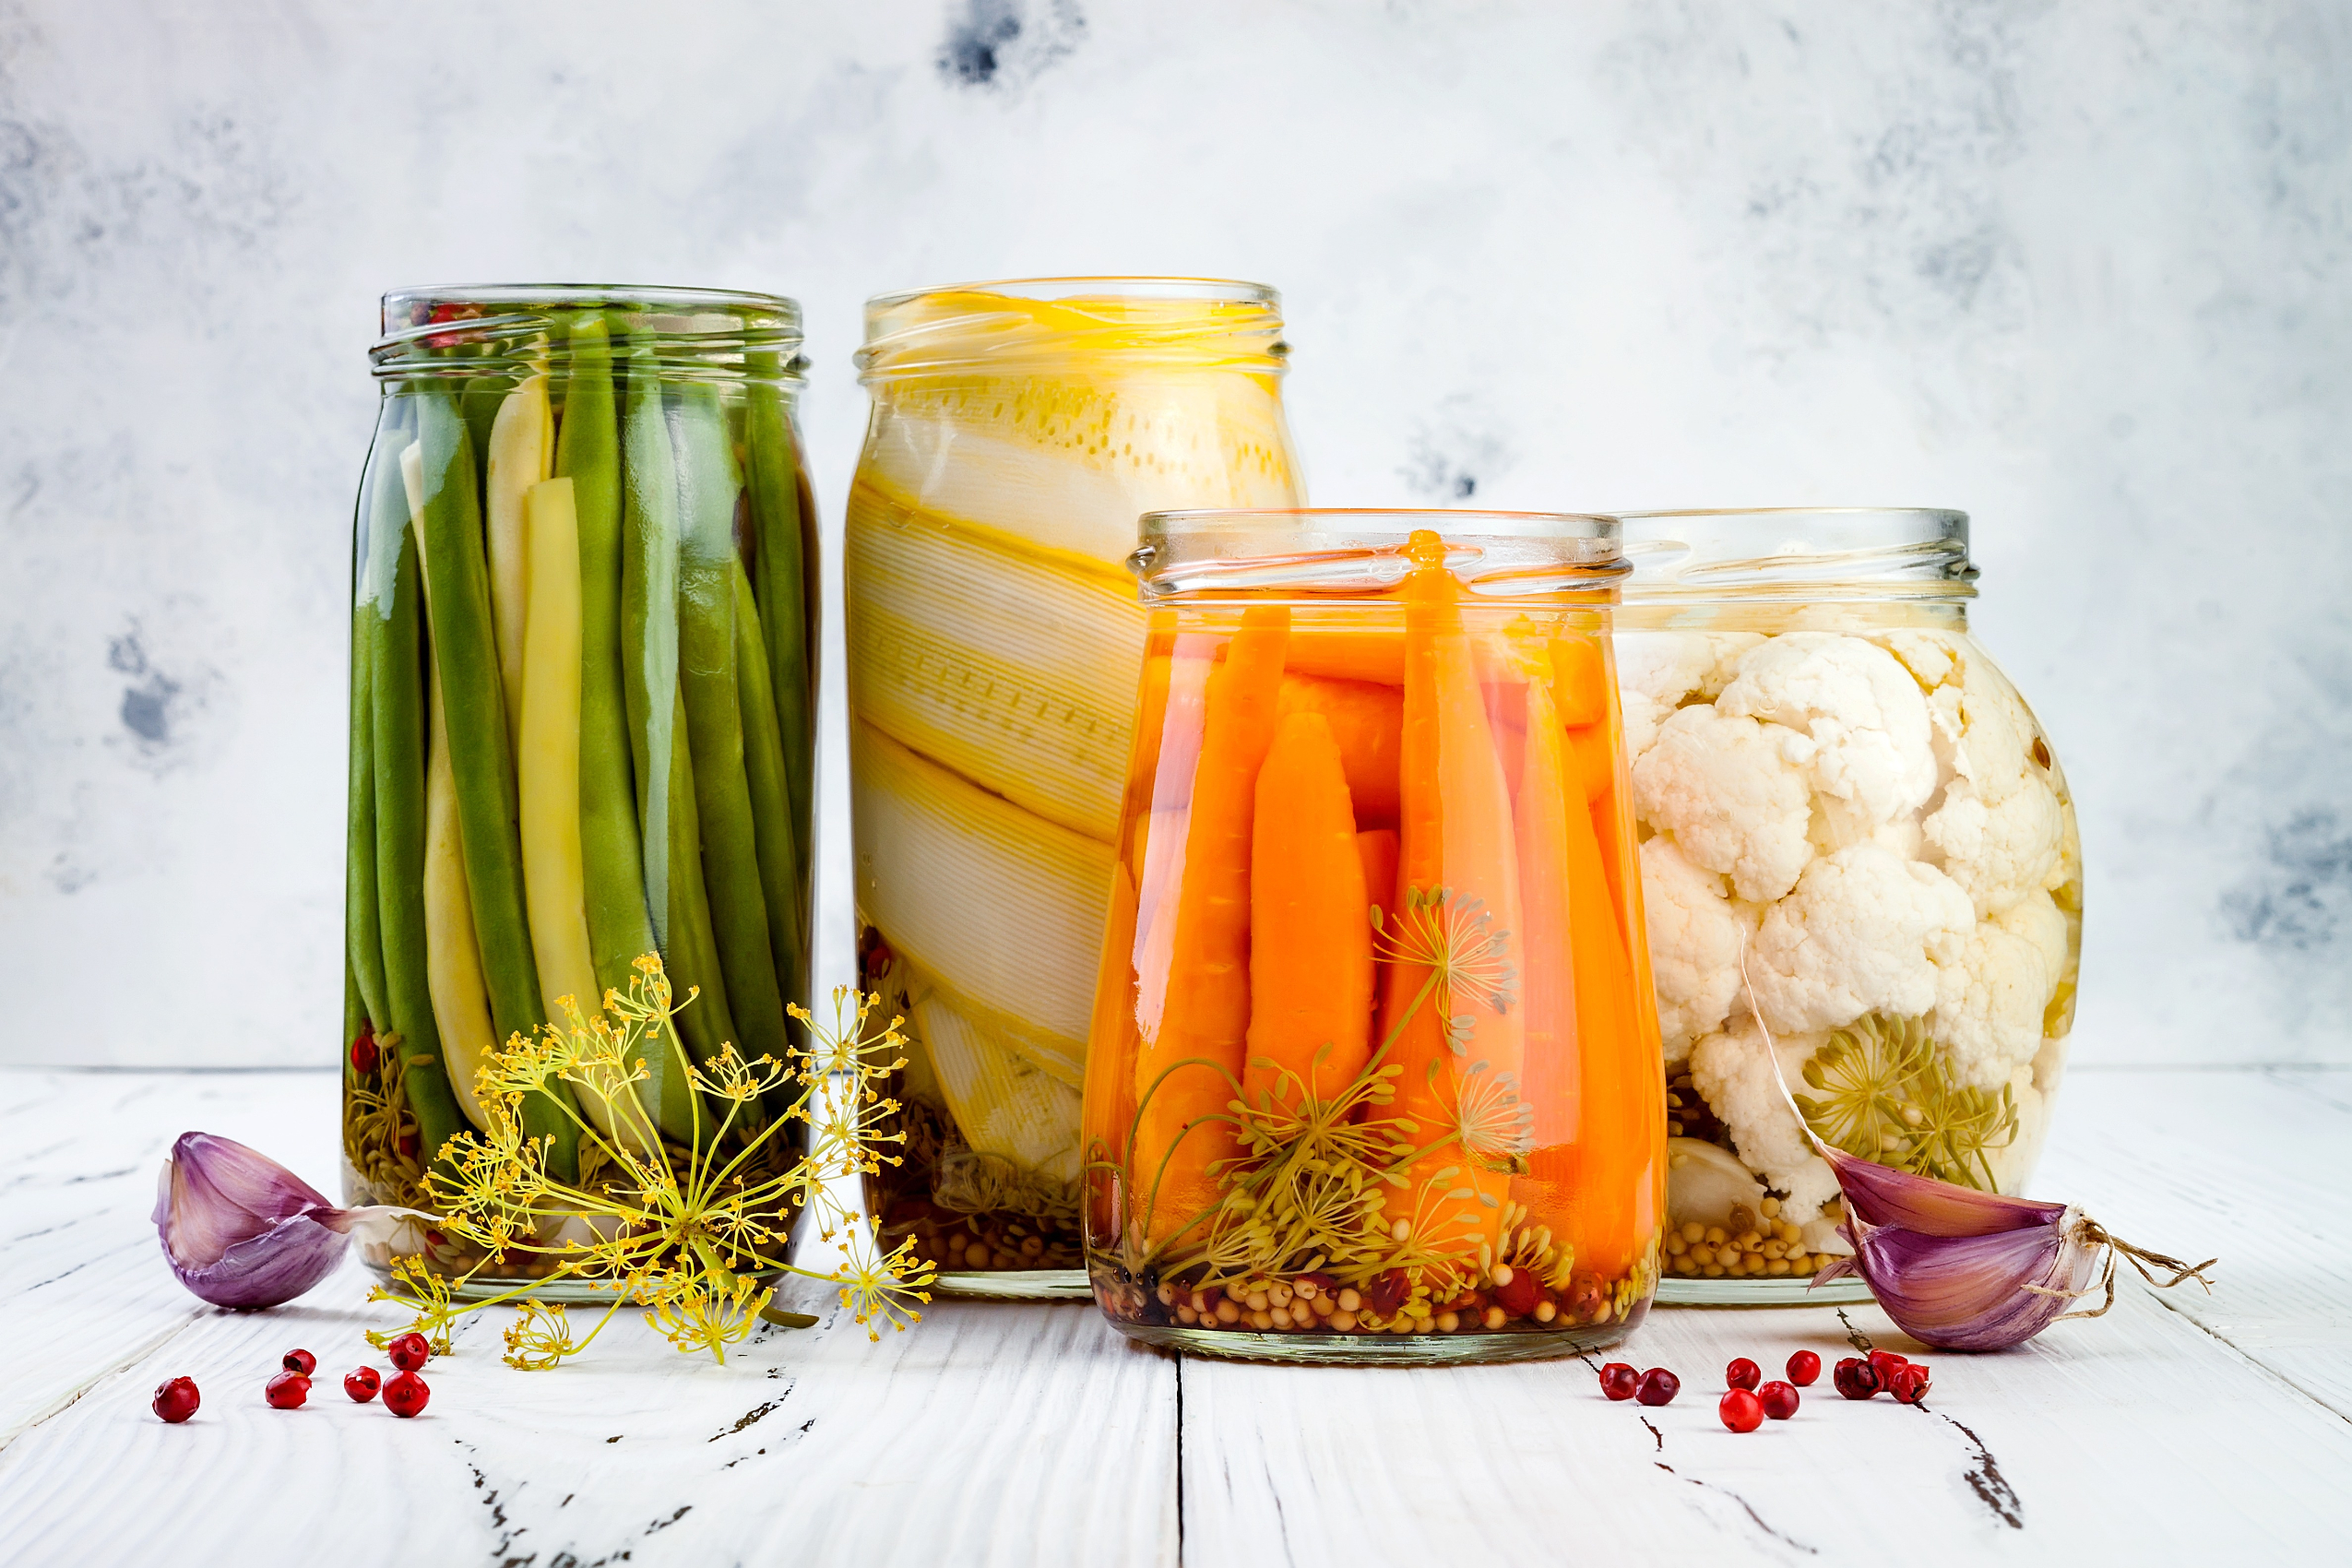 Pickled vegetables in jars